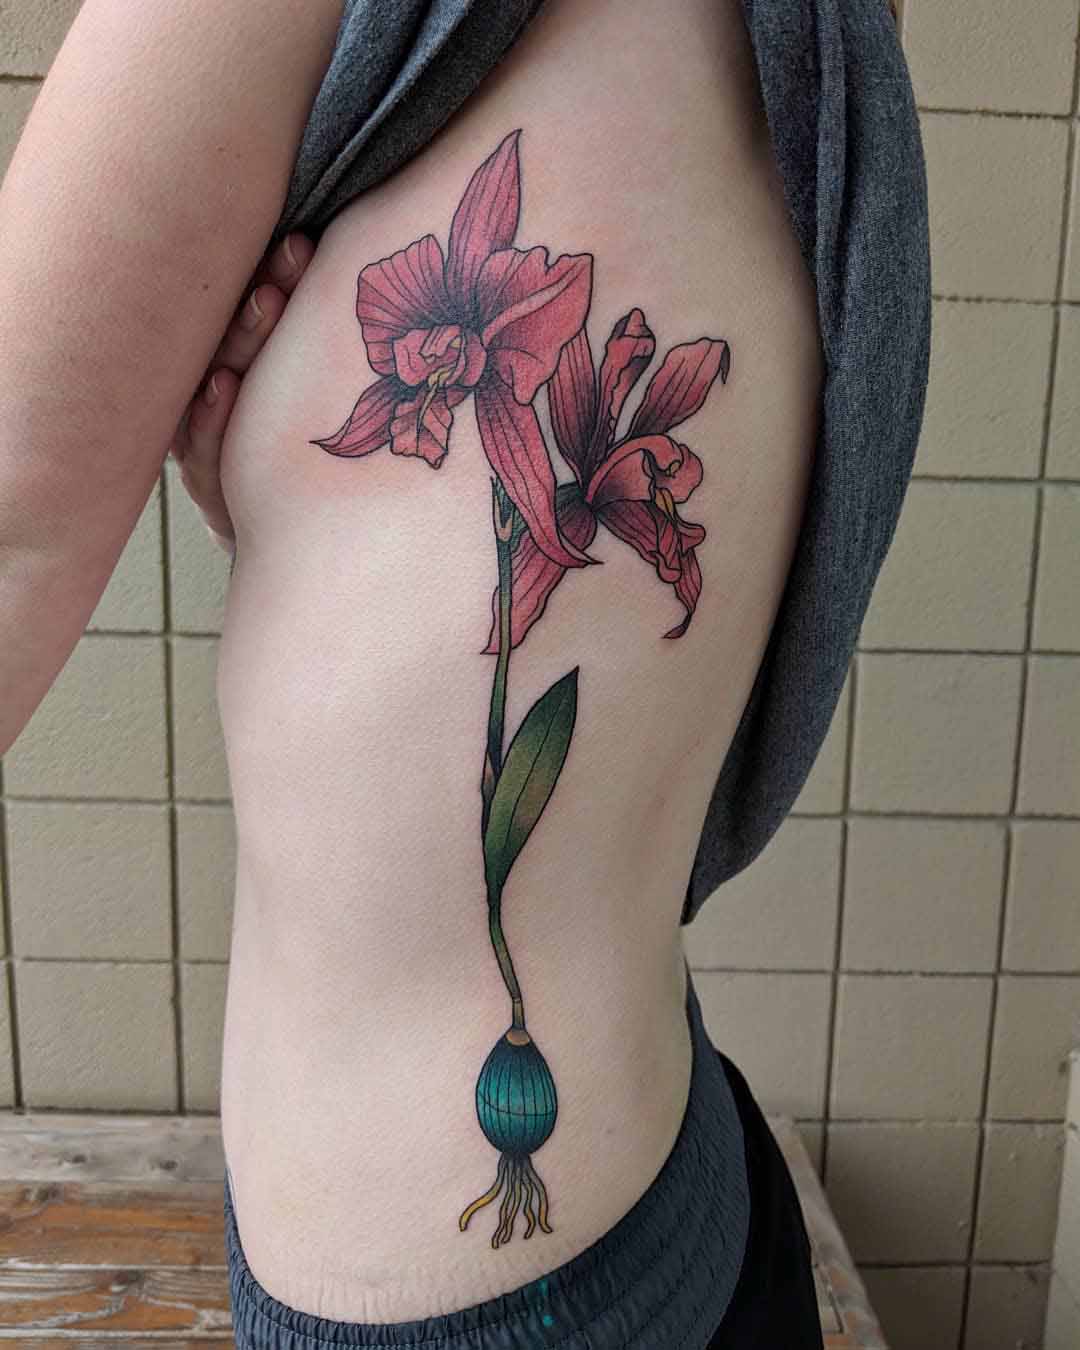 ribs tattoo orchid